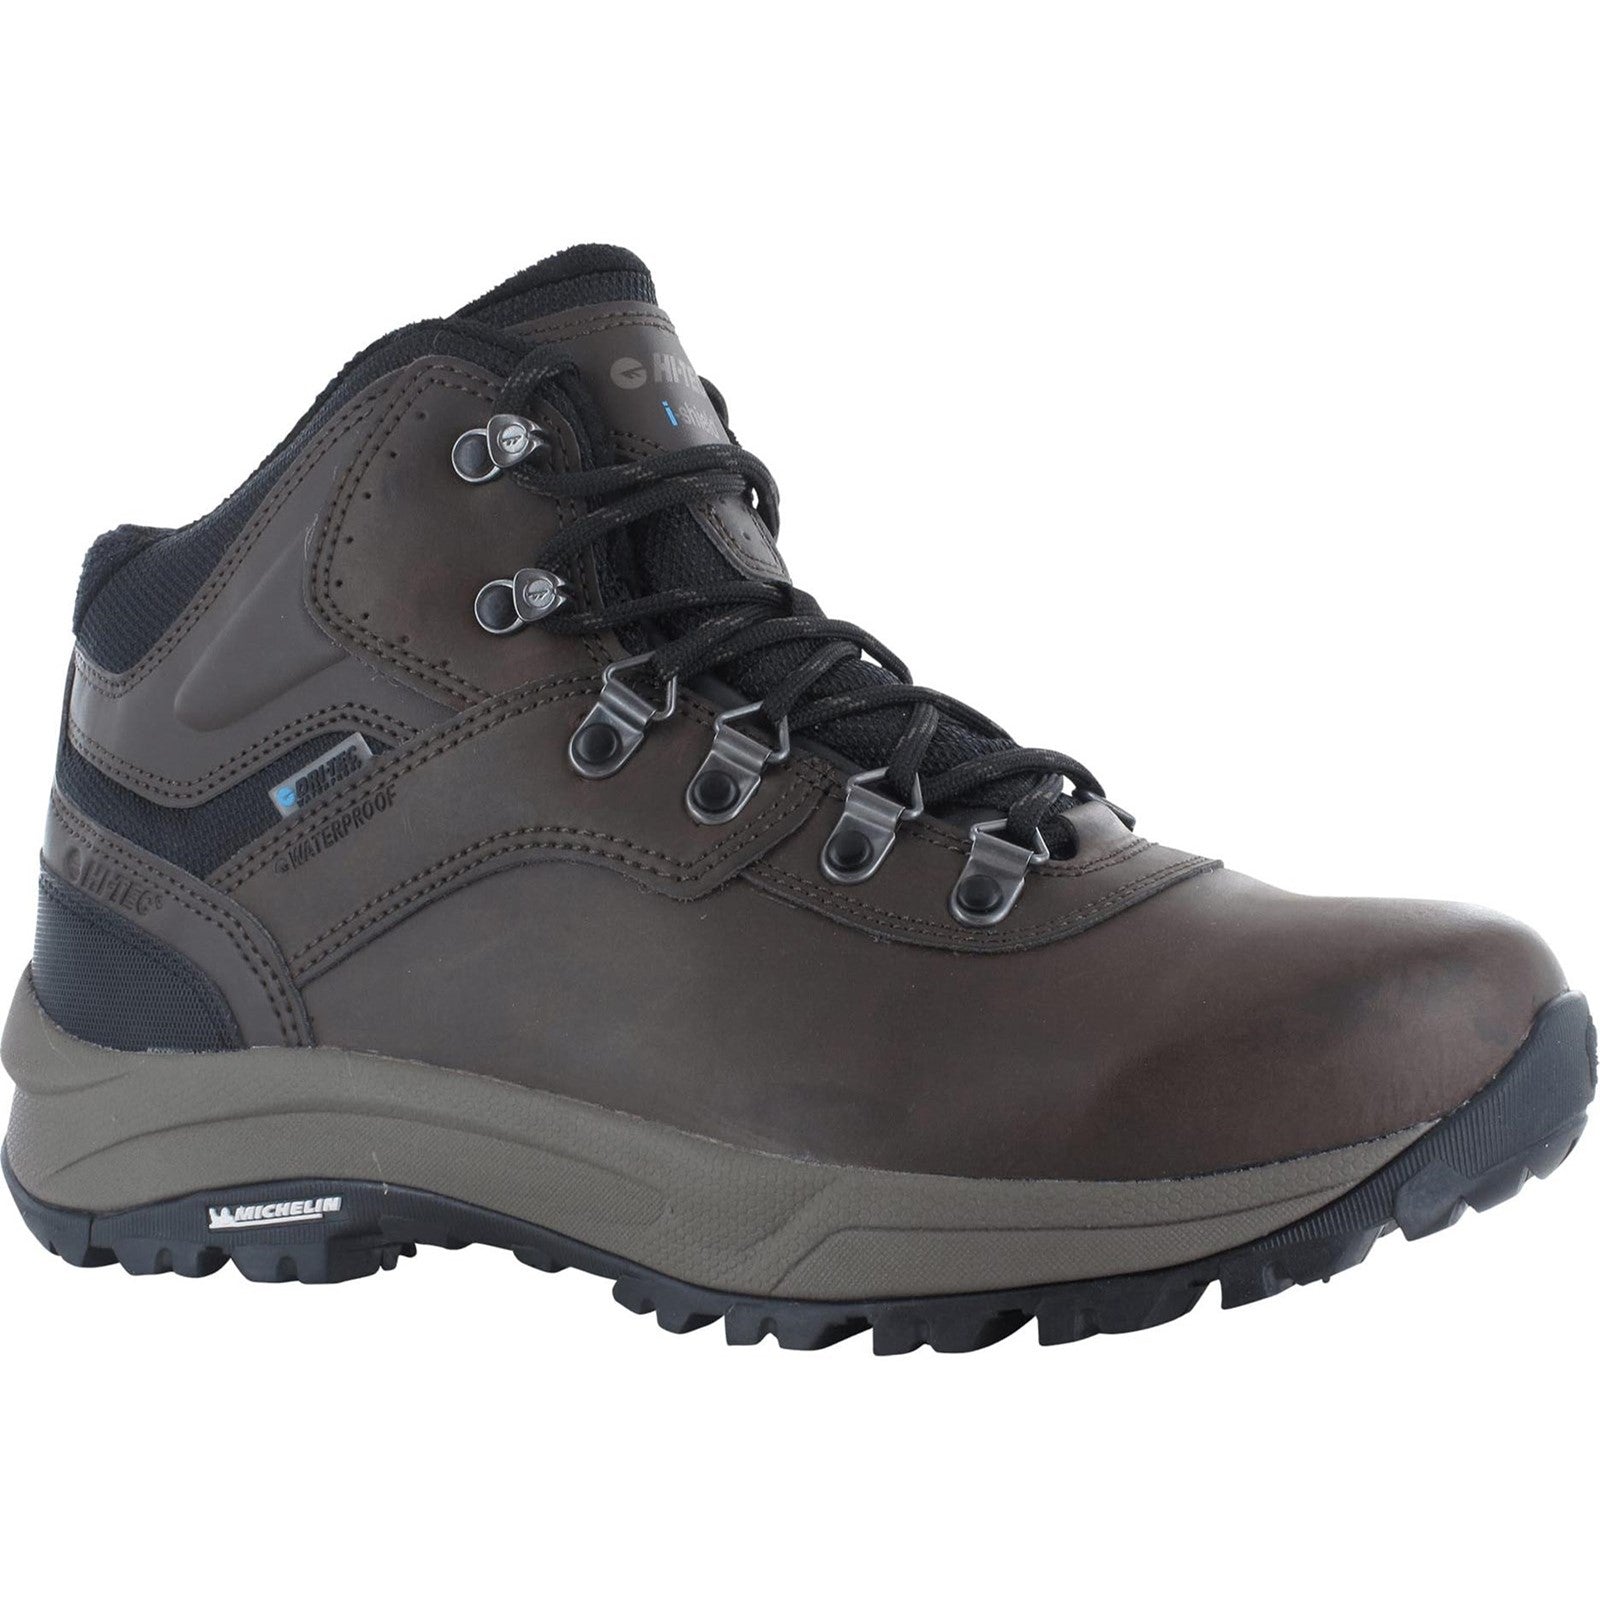 Hi-Tec Mens Altitude VI Leather Boots - Brown